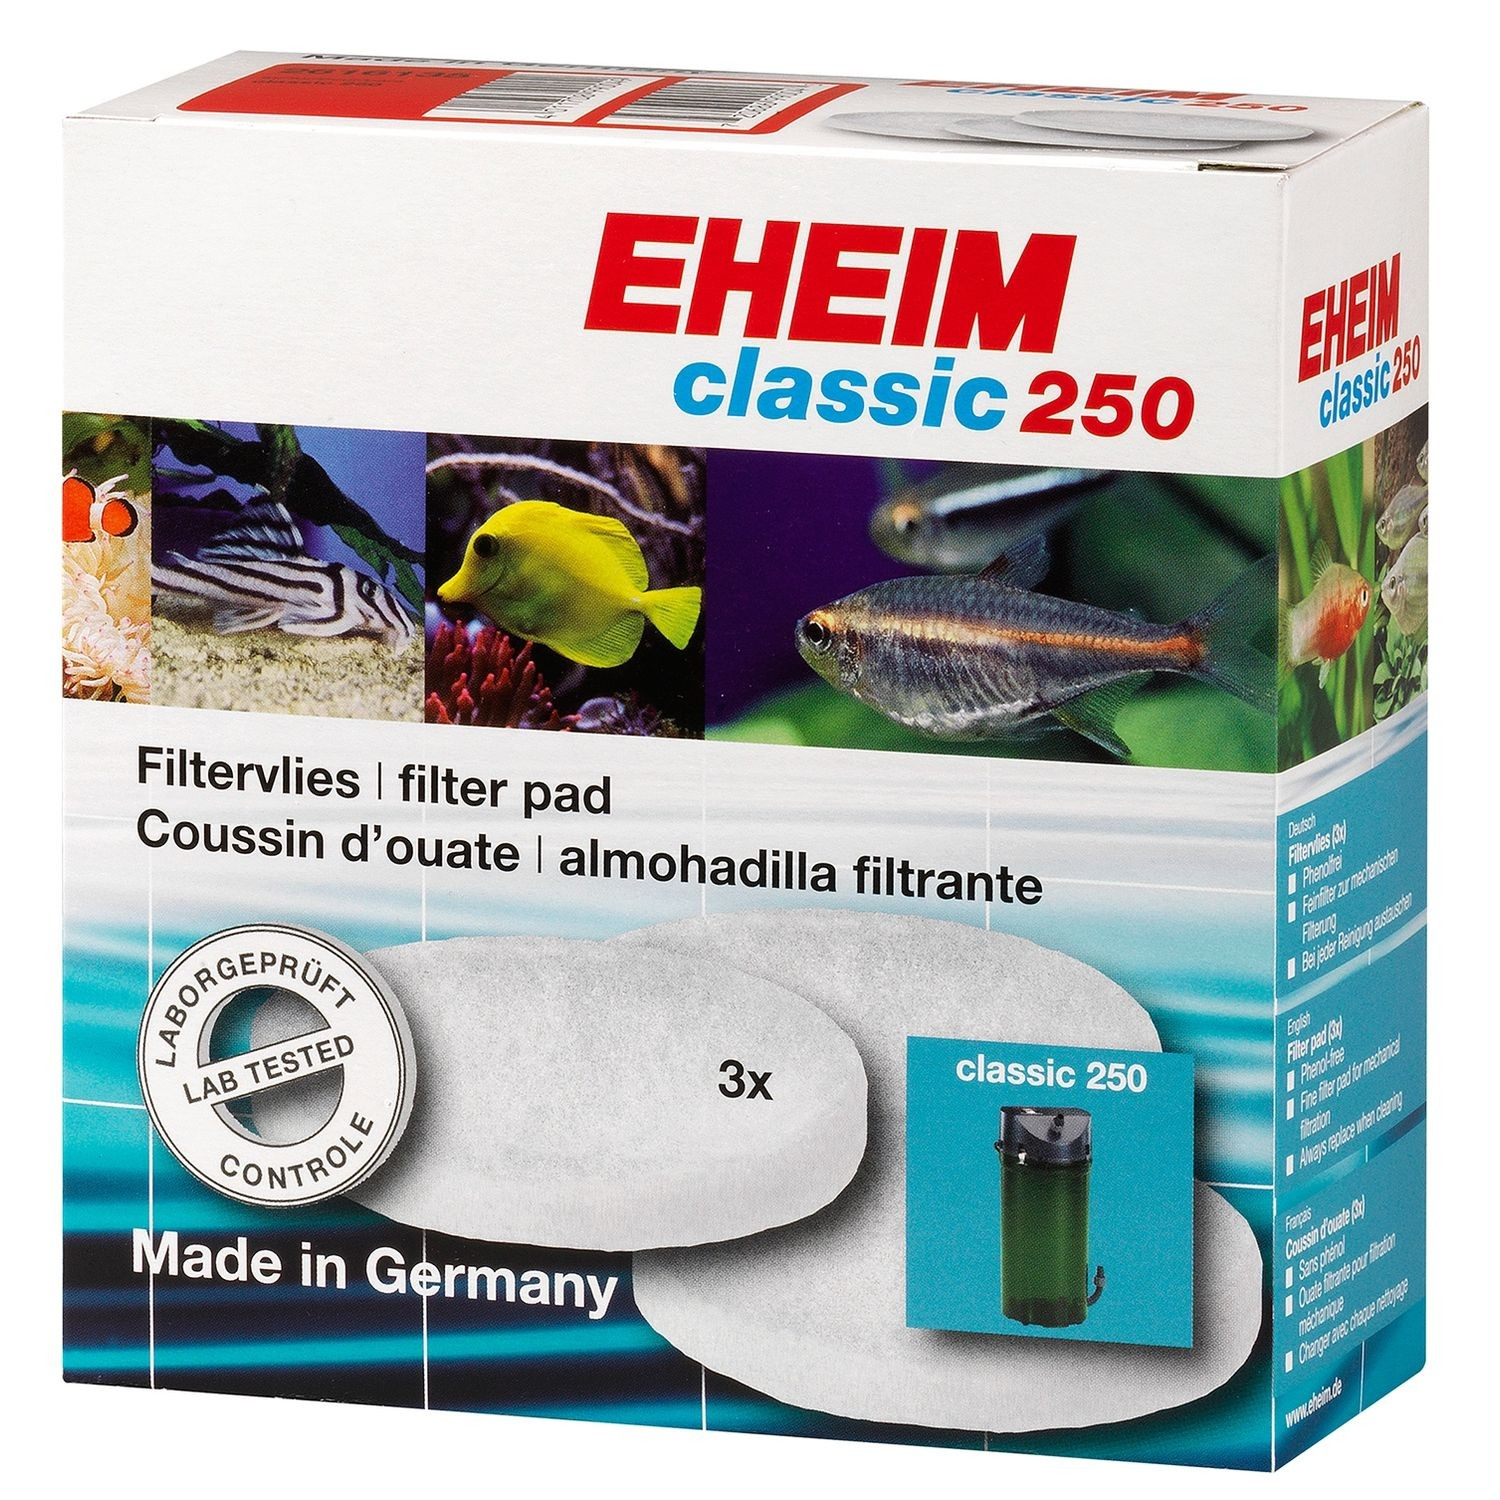 Almofadas de ouate filtrante x3 para filtro de aquário Eheim Classic 2213